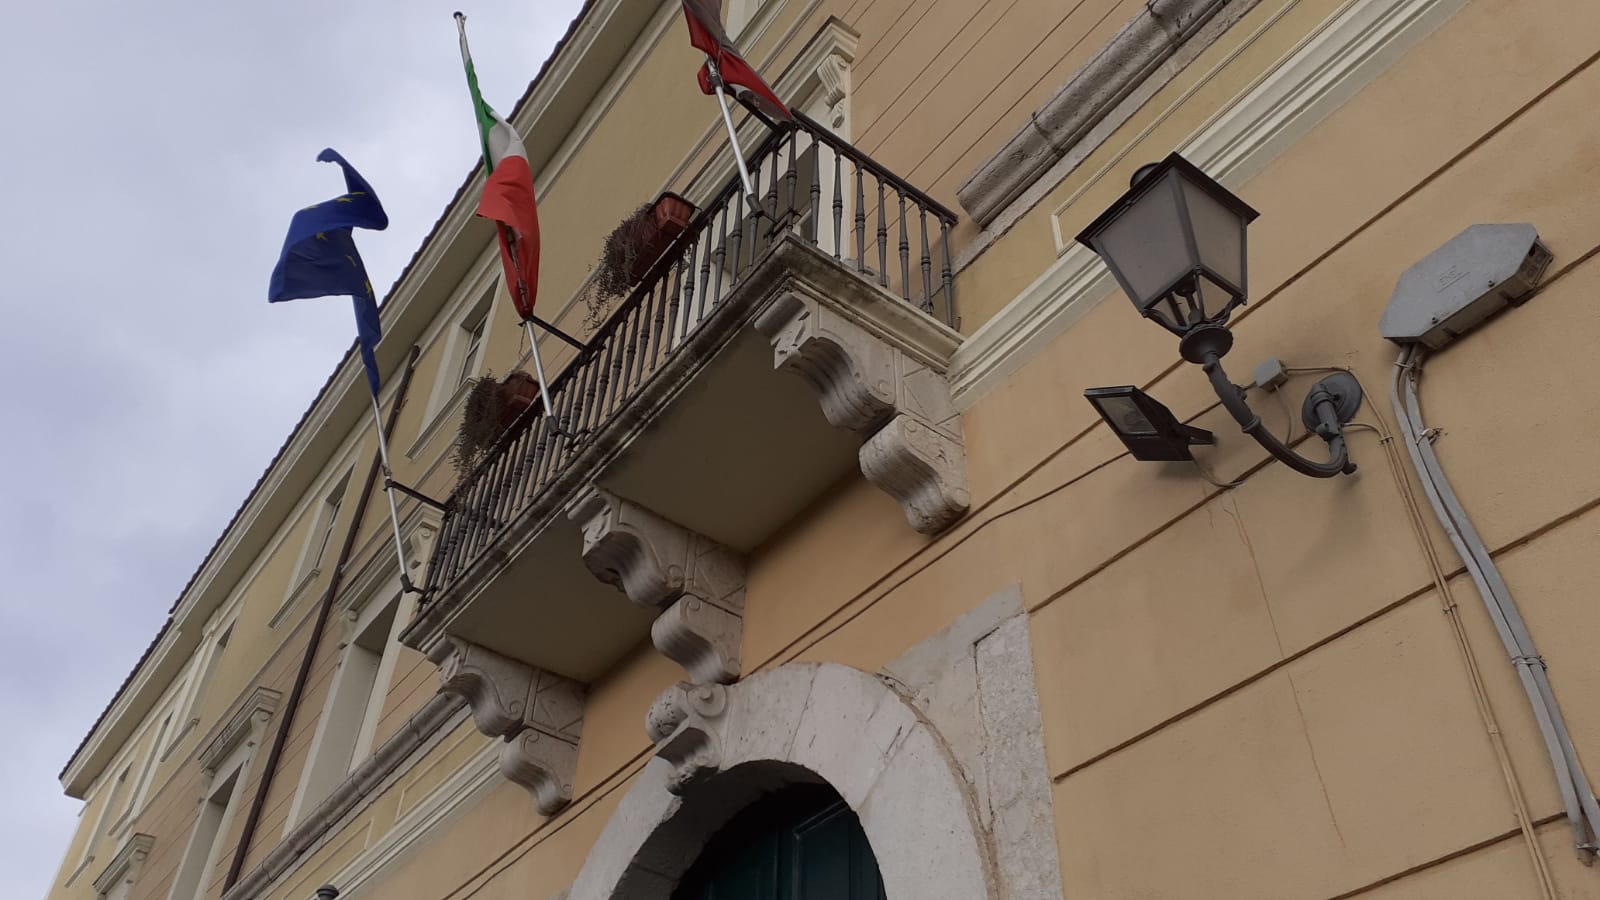 Benevento| Voto o non voto, questo è il dilemma…